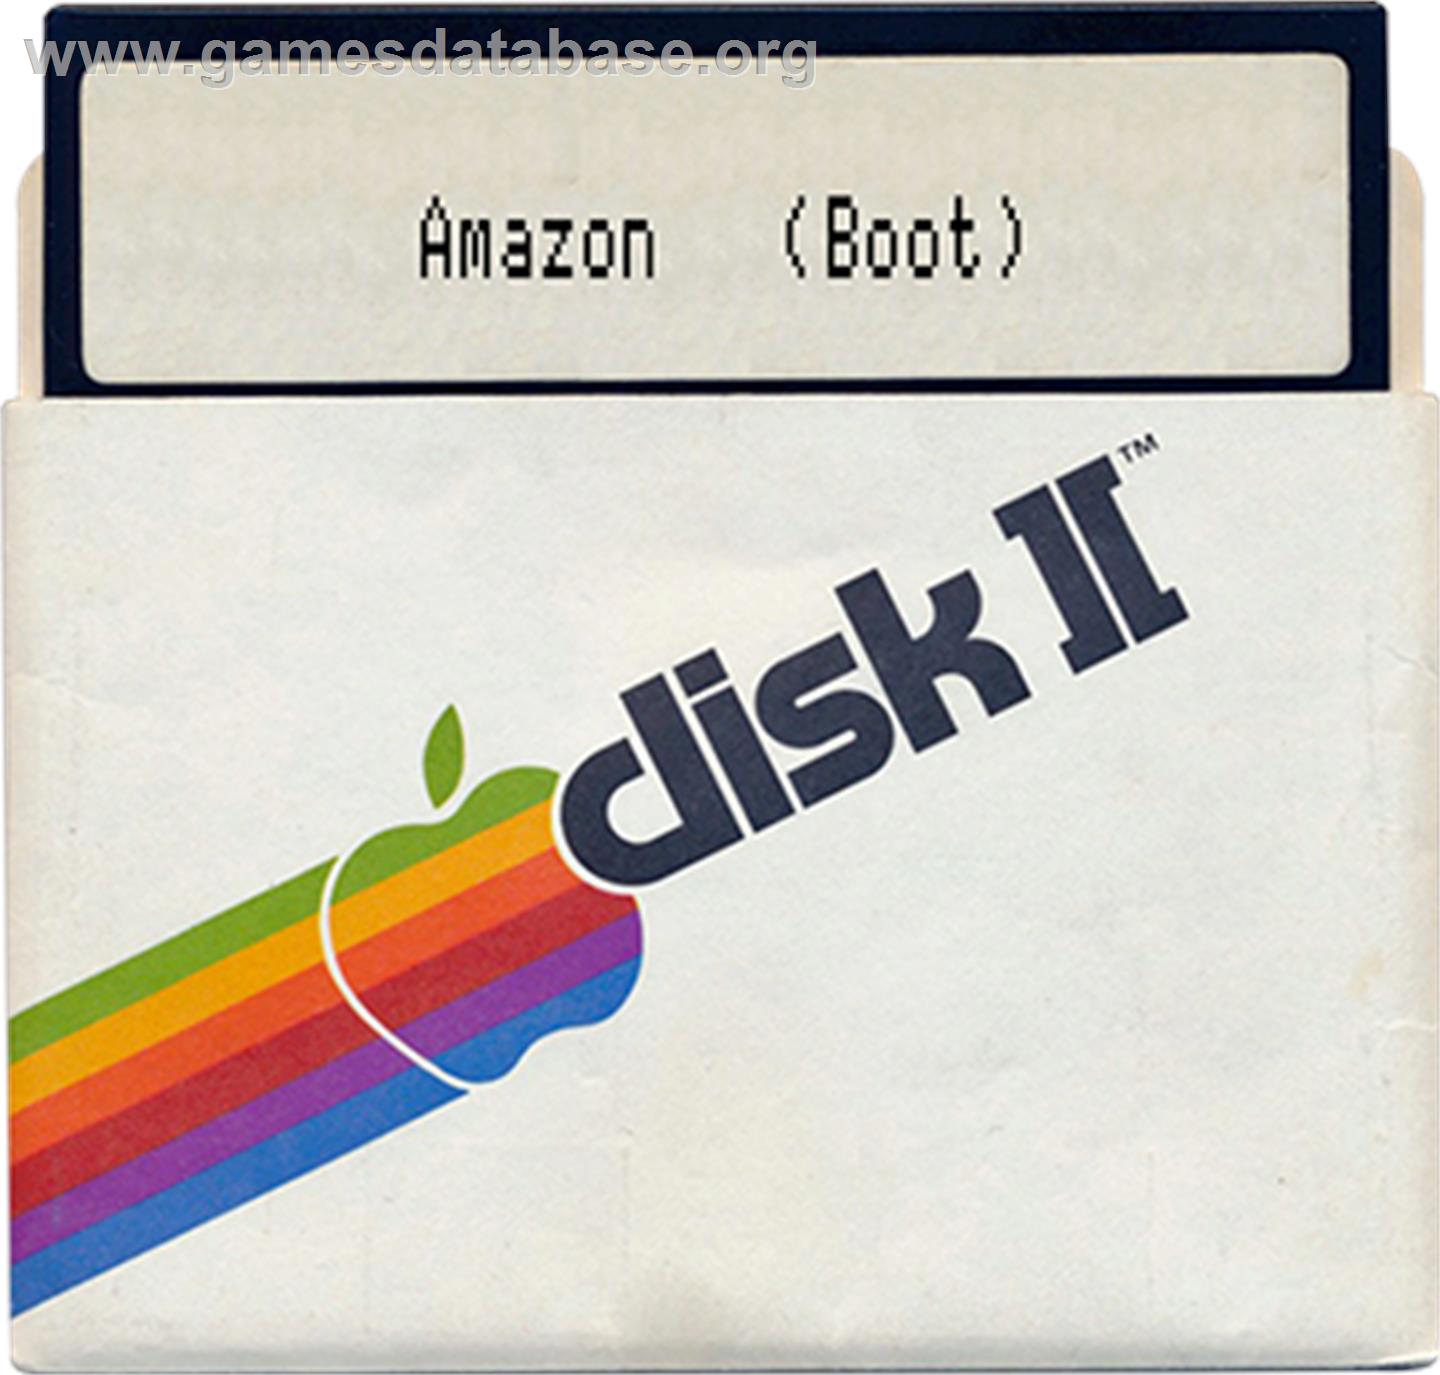 Amazon - Apple II - Artwork - Disc